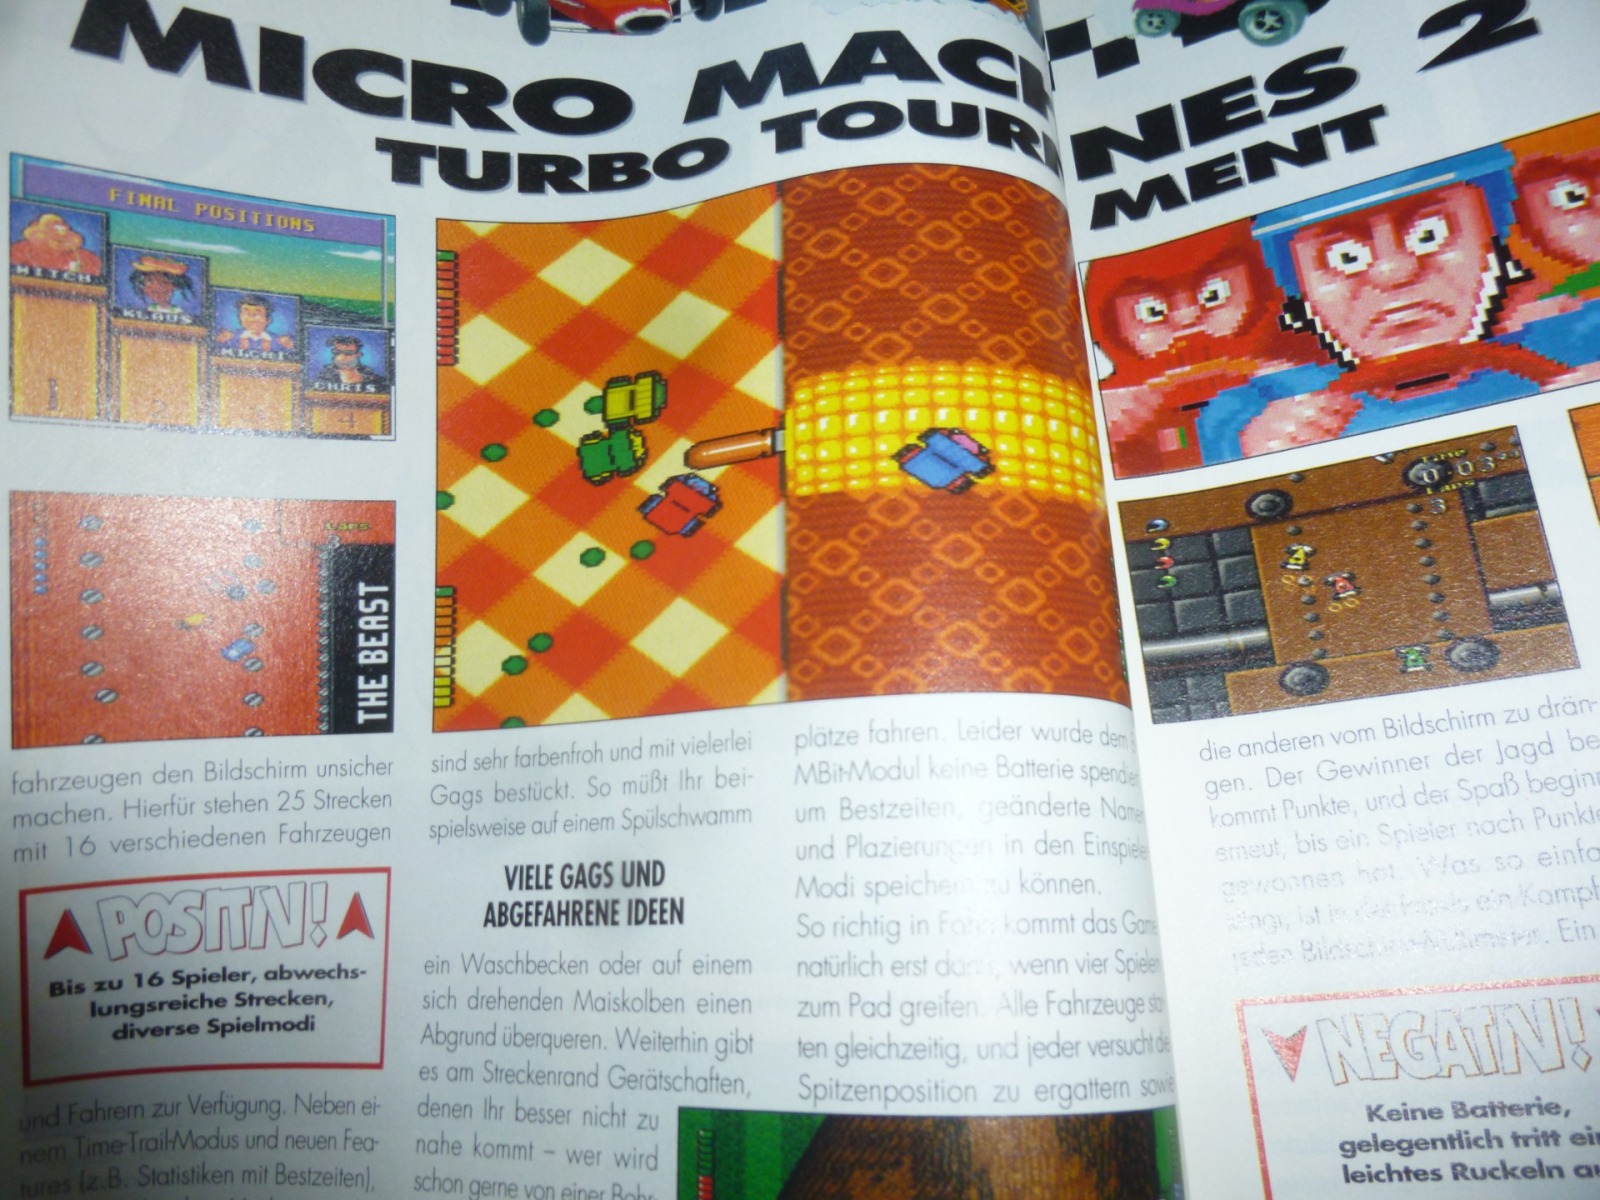 TOTAL Das unabhängige Magazin - 100% Nintendo - Ausgabe 2/96 1996 10